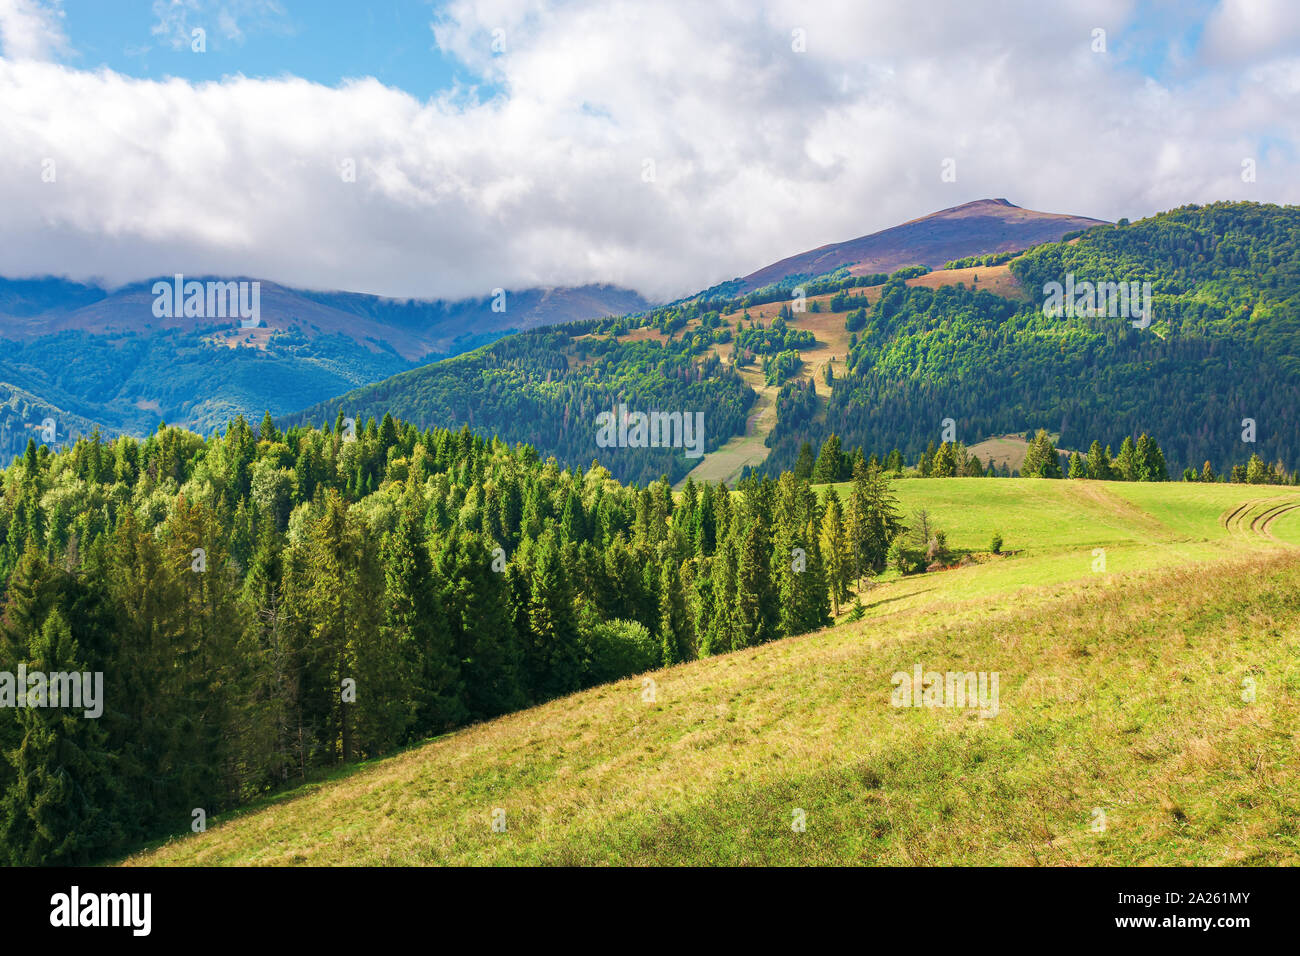 Gras Wiese am Hang. Nadelwald auf einem Hügel. borschawa Bergrücken in der Entfernung unter einem bewölkten Himmel. wunderbar sonniger weath Stockfoto